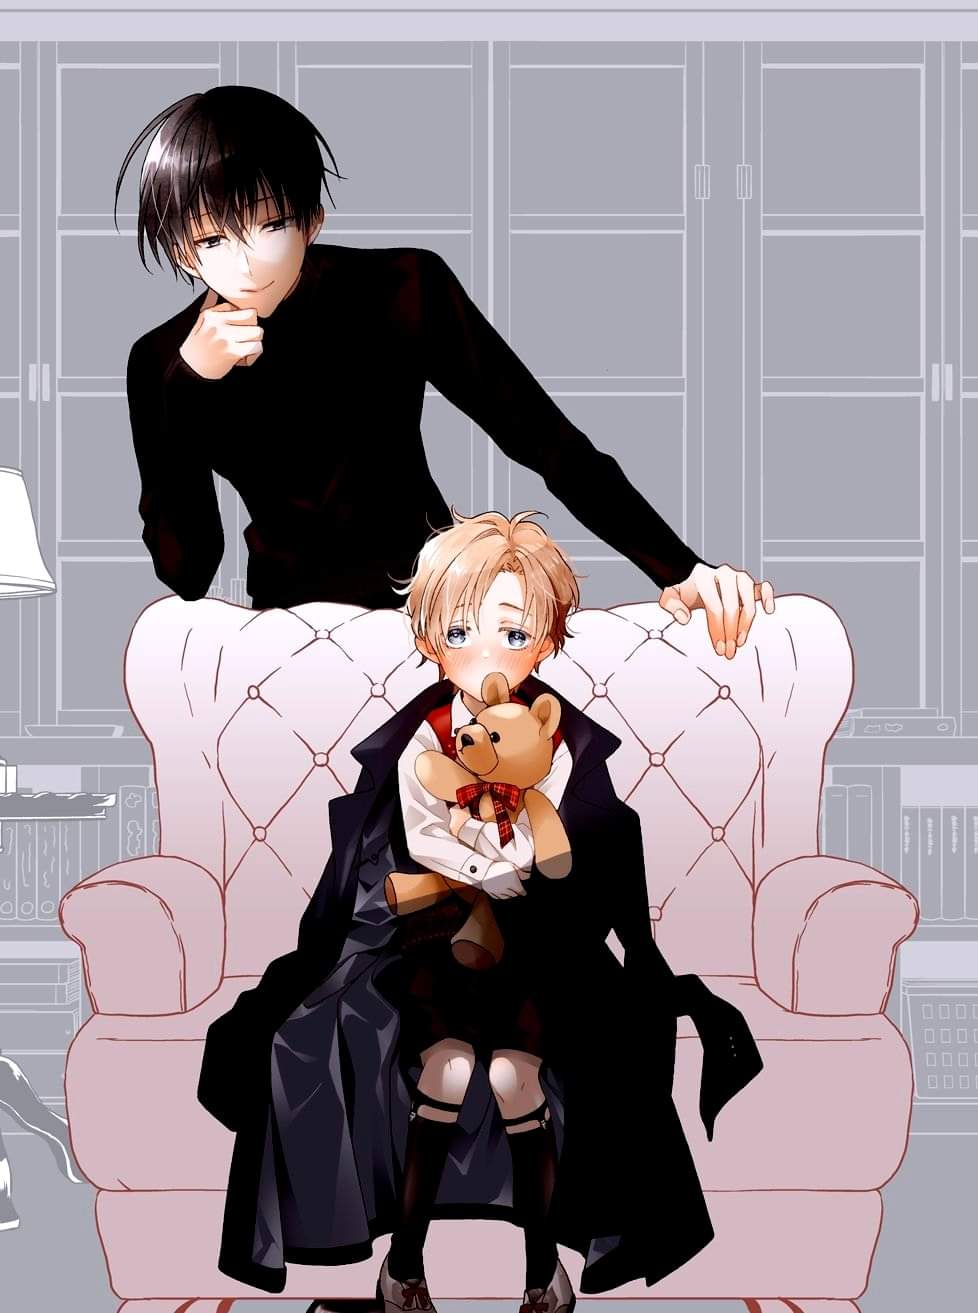 a imagem retrata os dois personagens principais da história, chika que está sentado em uma poltrona grande e branca acompanhado de Haruka que está em pé atrás da mesma poltrona apoiando o braço no móvel e seu queixo na mão